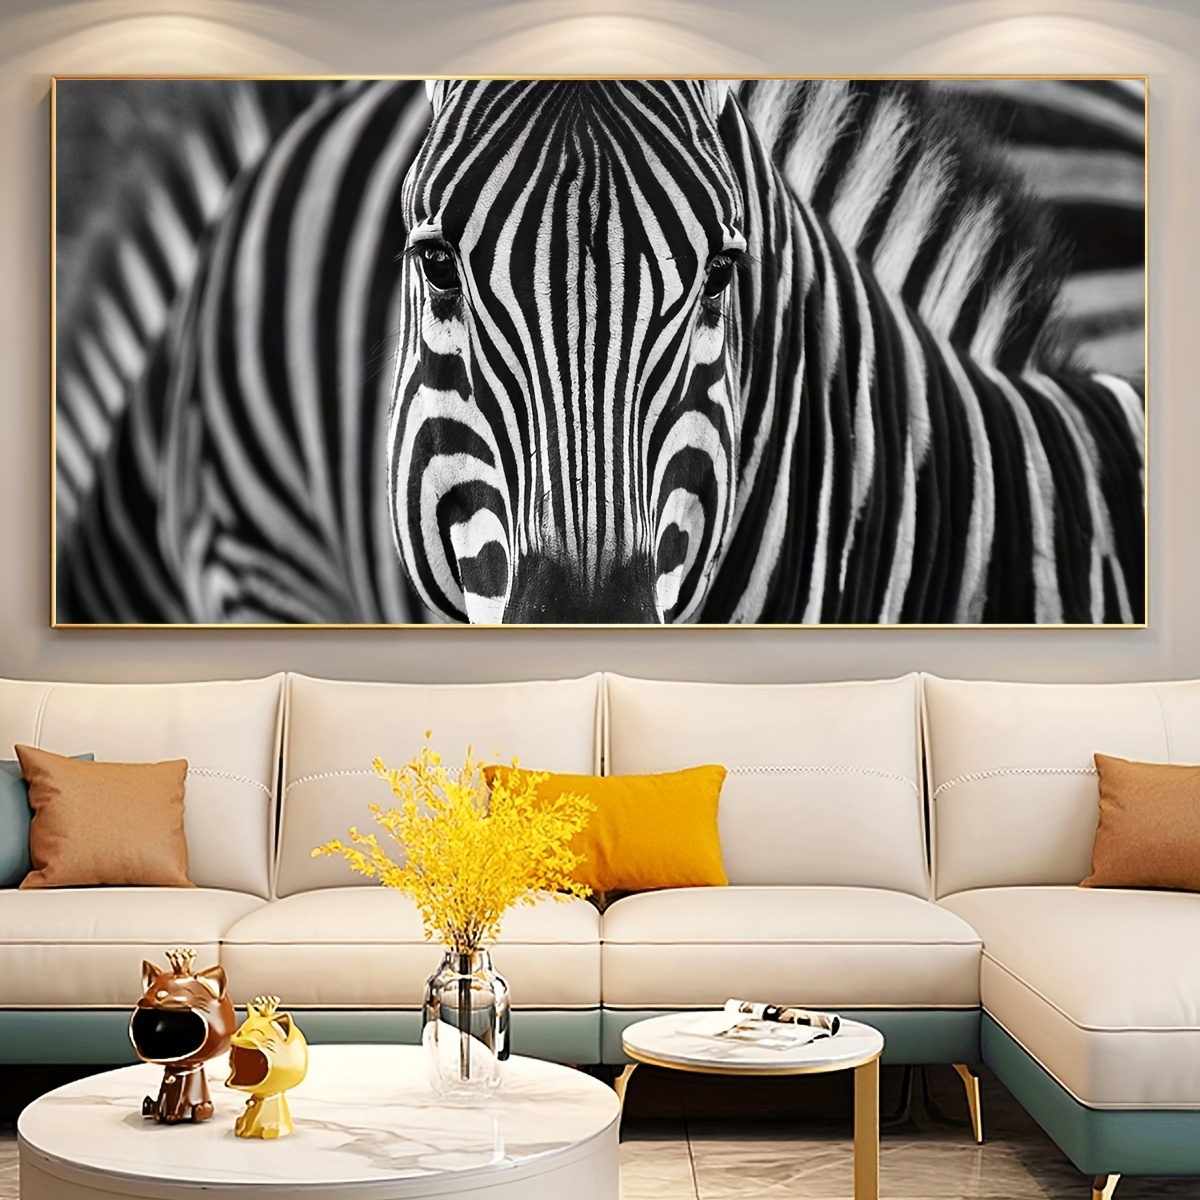 Papel infantil para paredes o muebles - Zebras